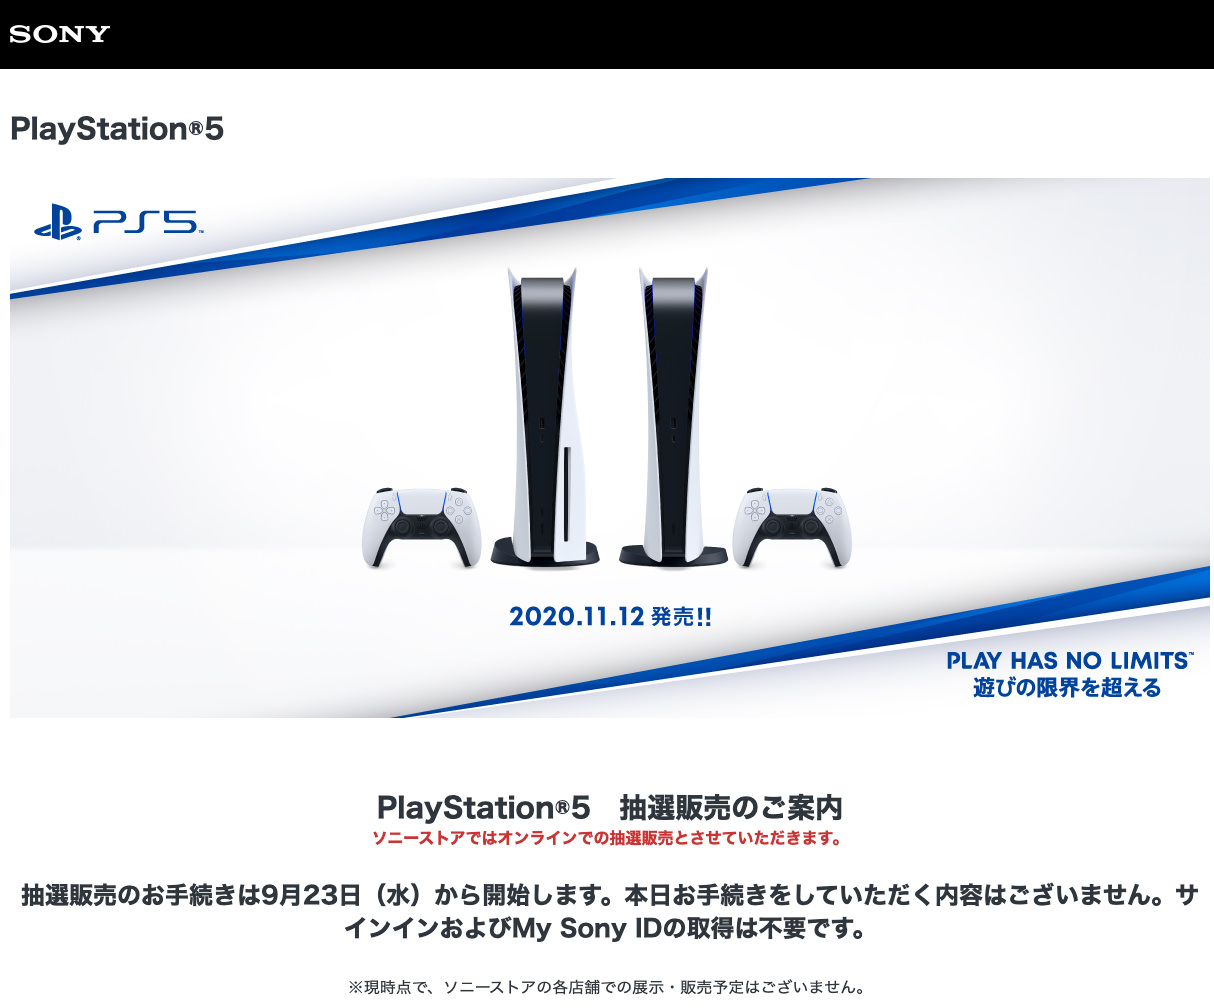 ソニーストア PlayStation 5 予約